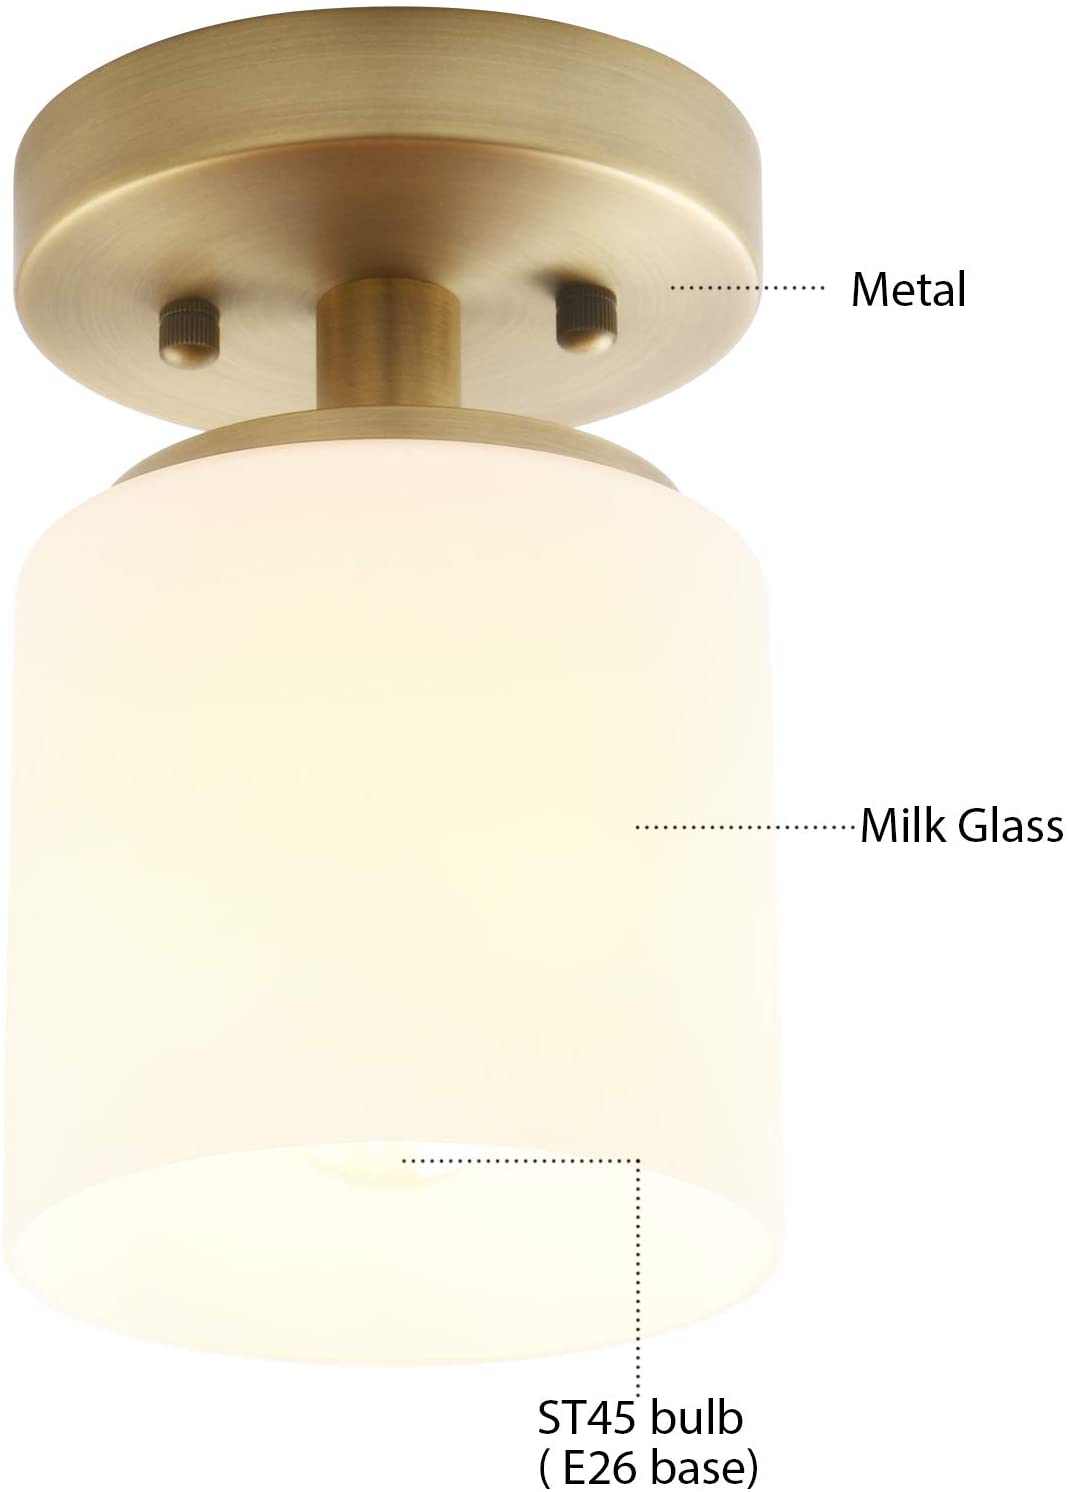 Modern glass ceiling light fixture 1 light semi flush mount light fixture